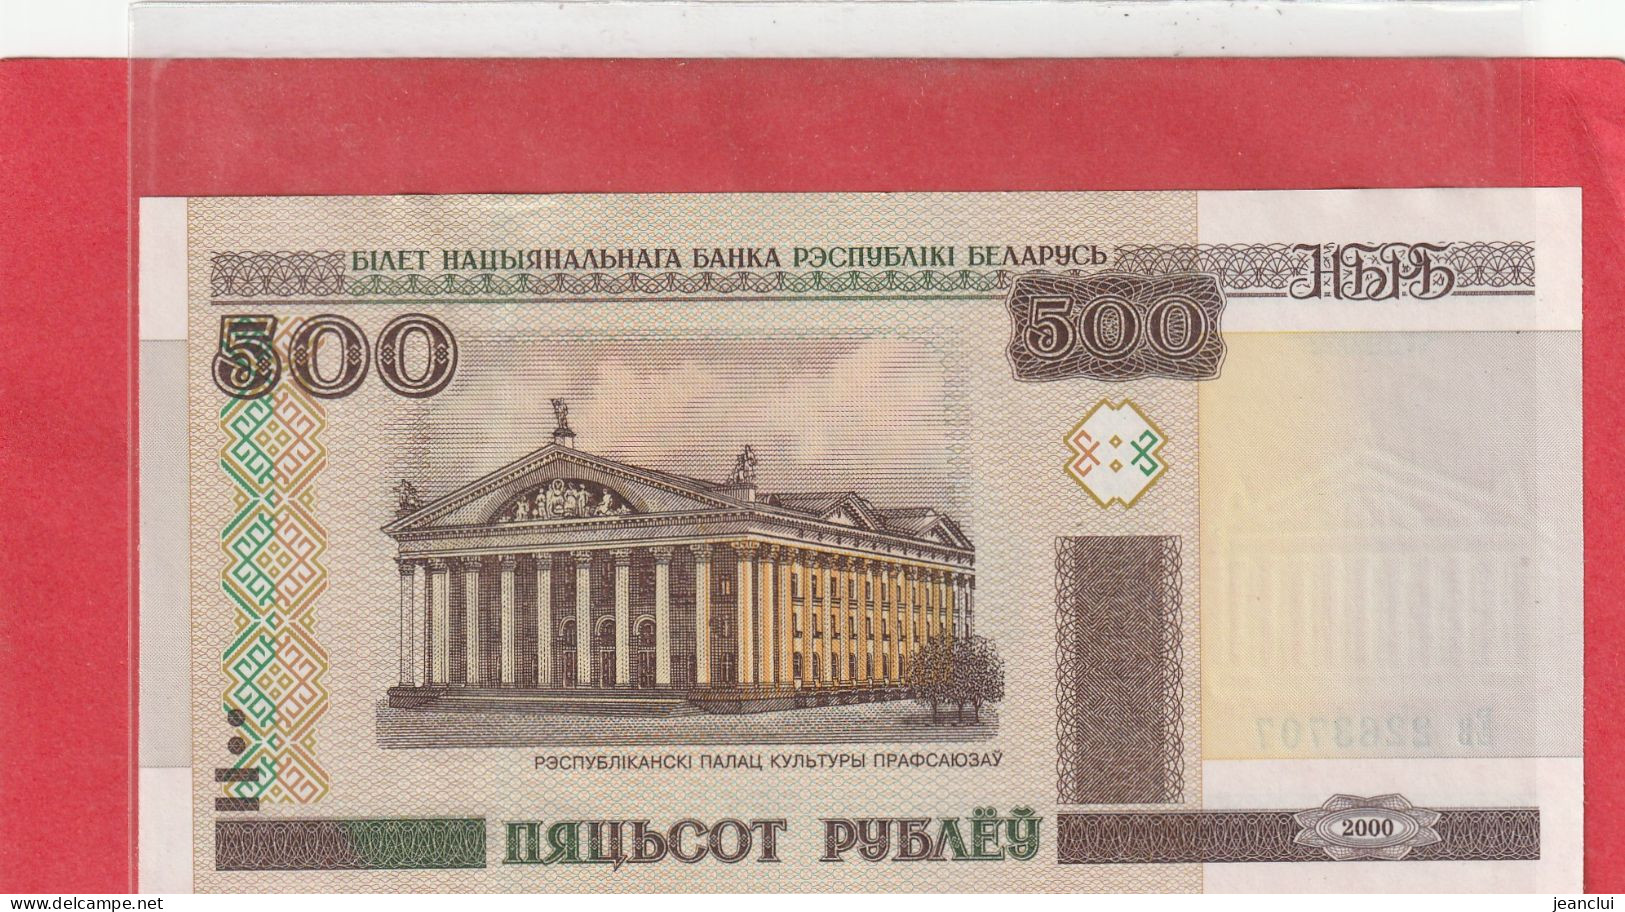 BELARUS . 500 RUBLE  . 2000 . N°  2263707  .  ETAT LUXE  .  2 SCANNES - Belarus